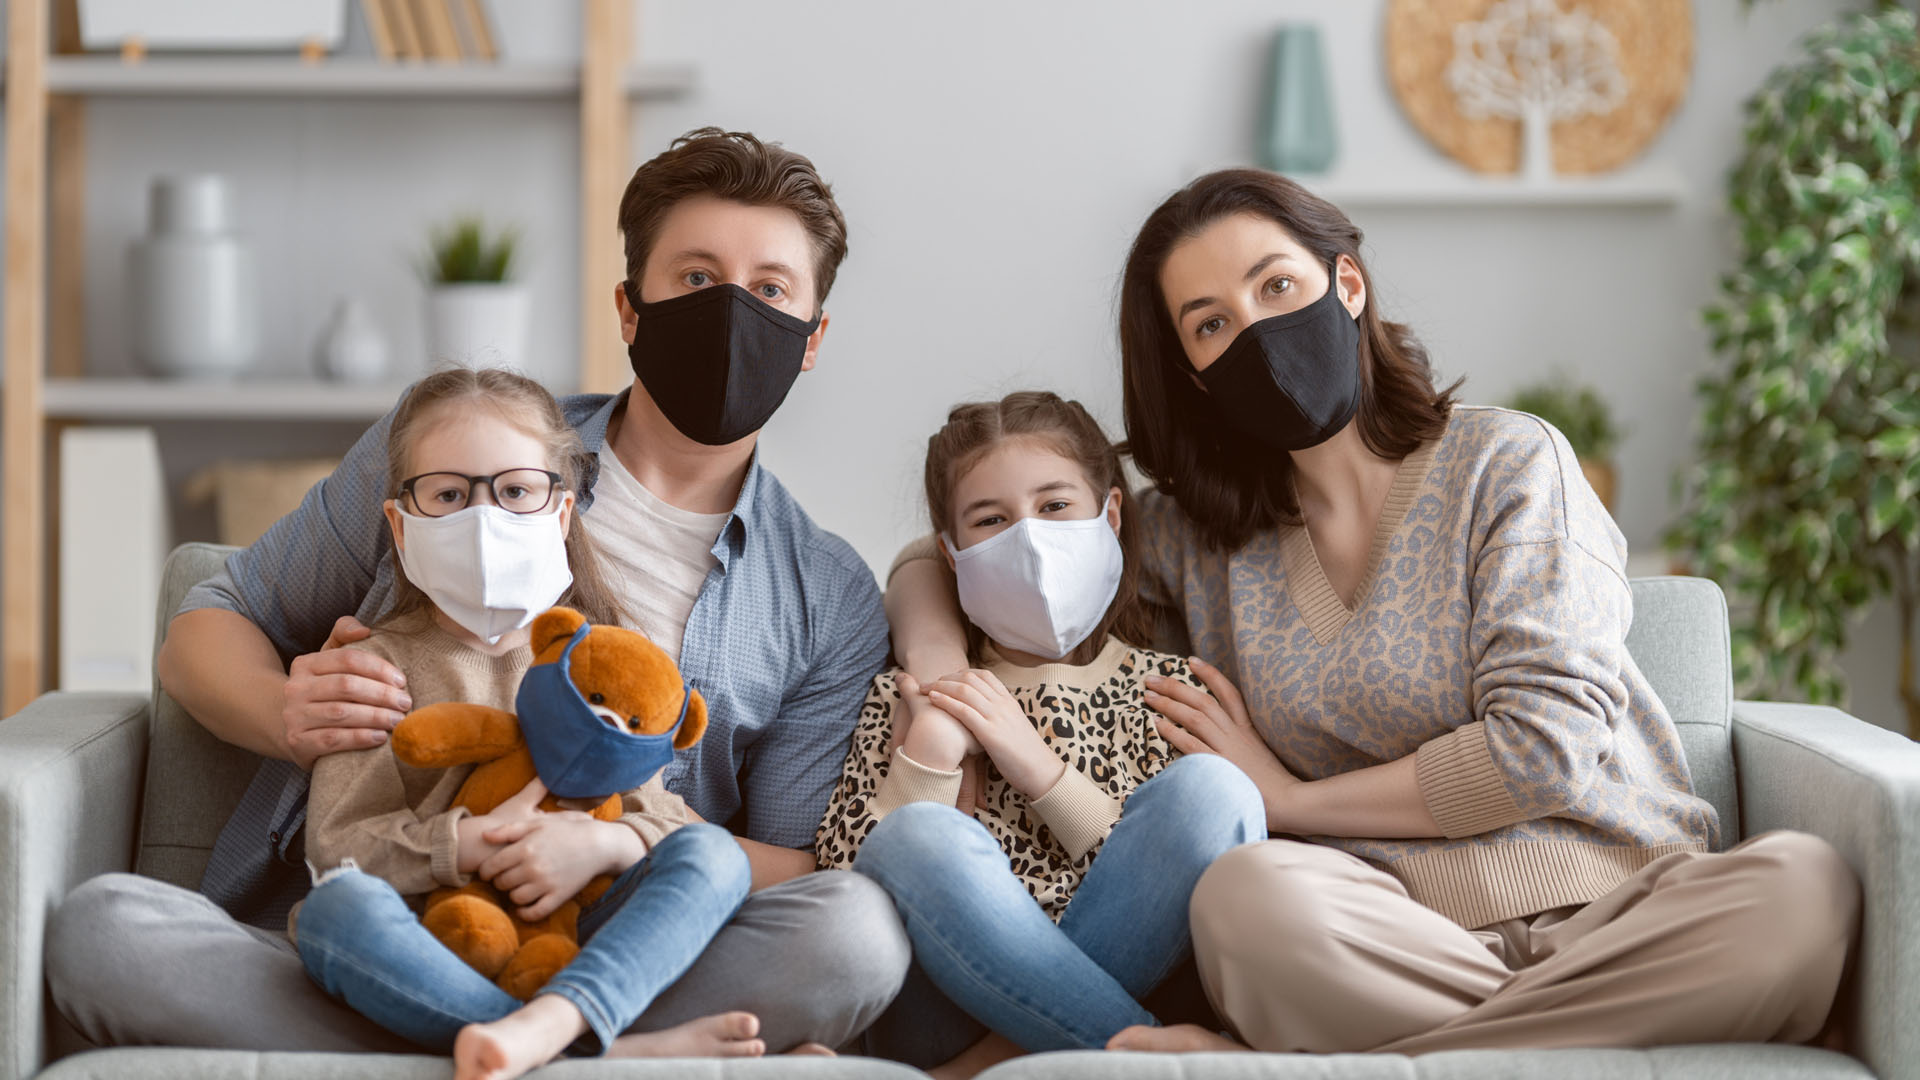 People started to live. Семья в масках. Счастливая маска. Пандемия и семья. Роли и маски в семье.